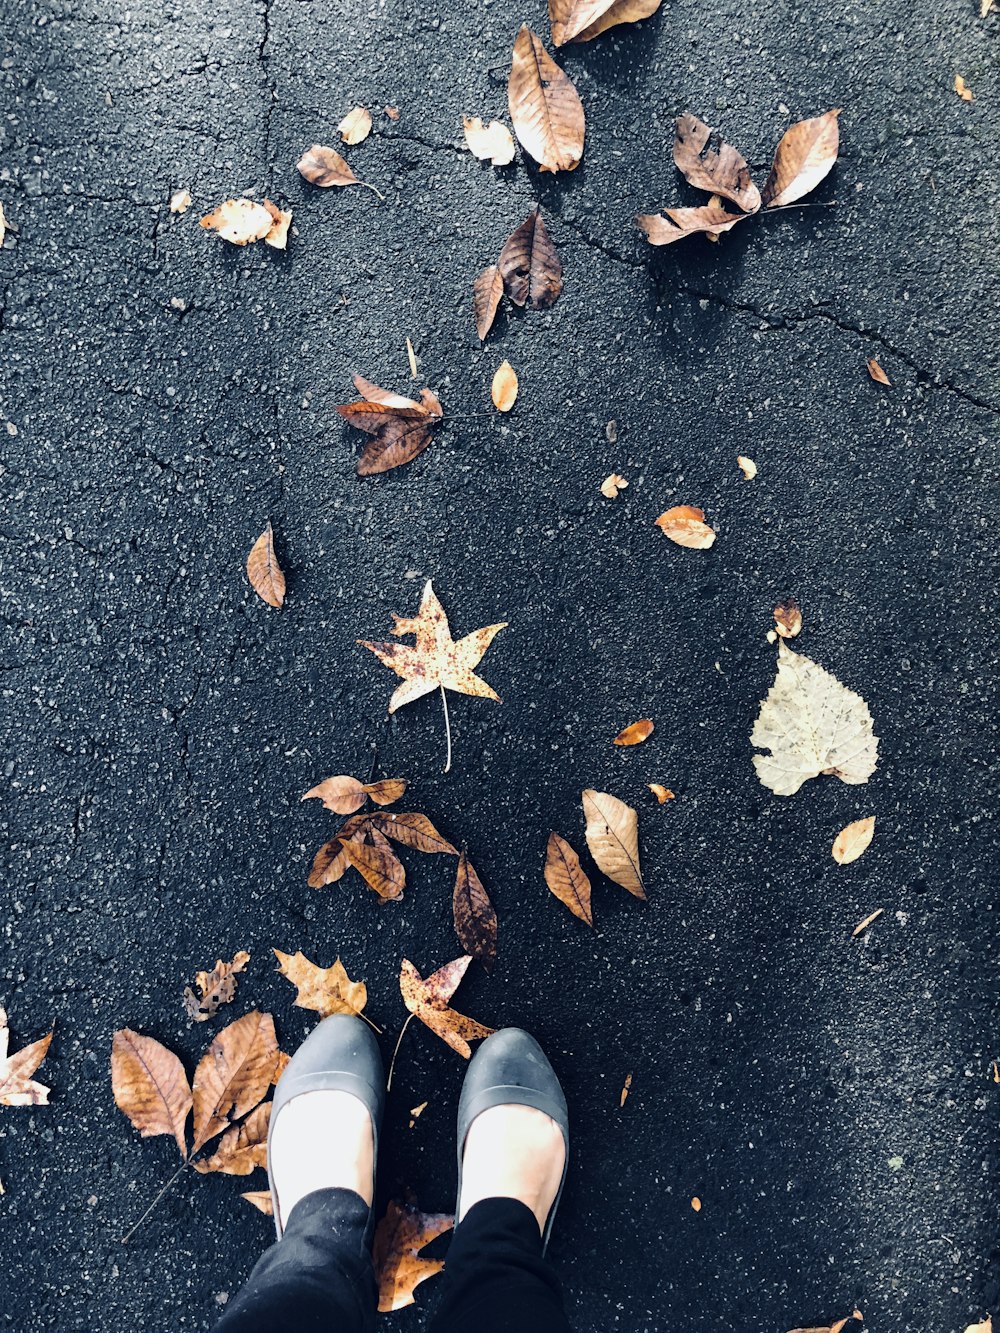 枯れた葉の近くの舗道に立つ黒い革のフラットを着た女性